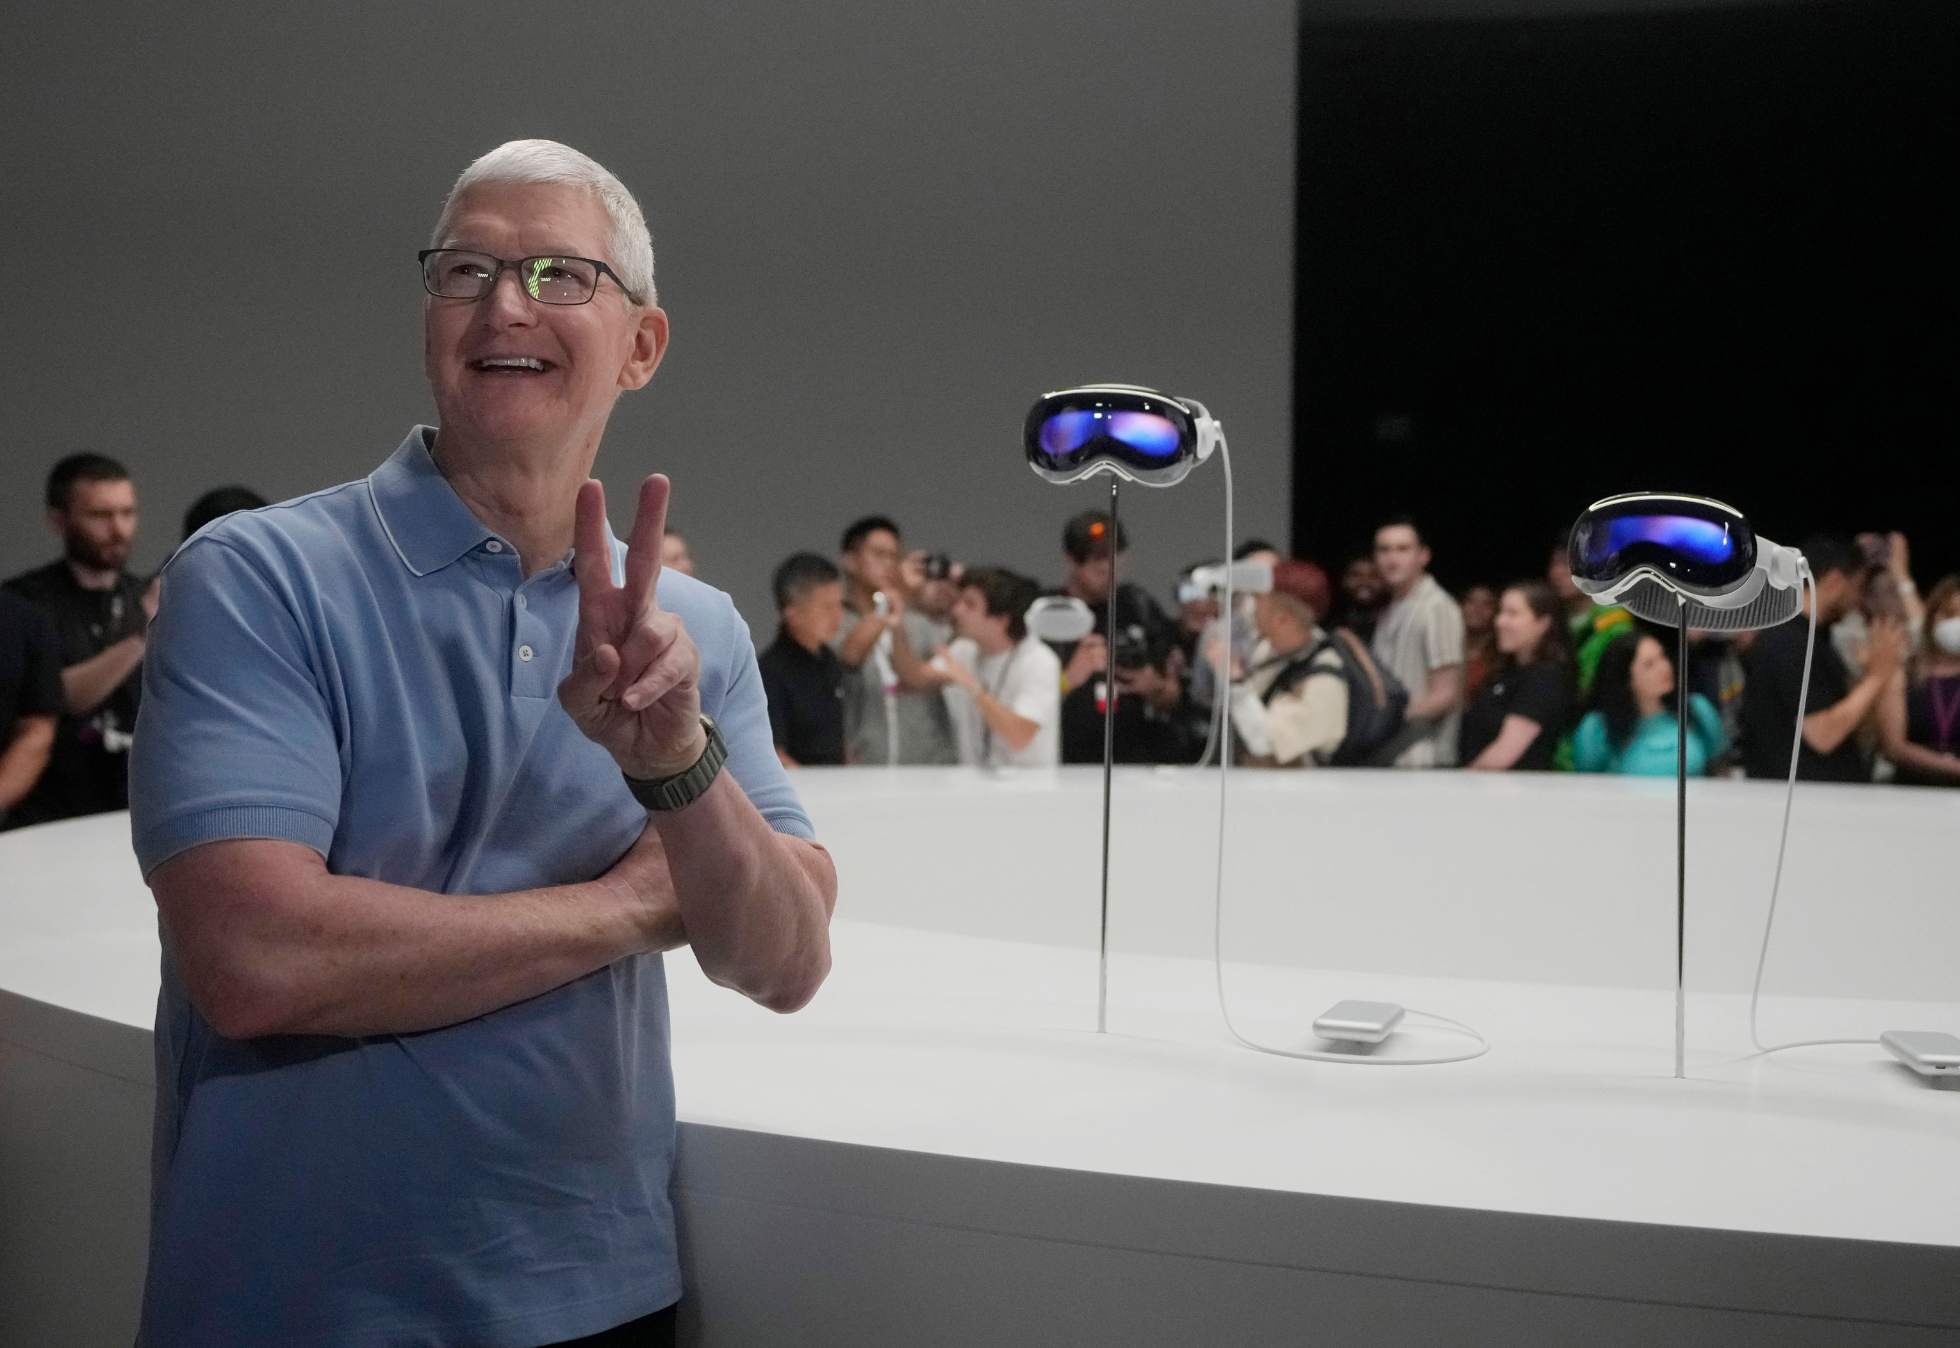 Apples fremtidsvisjon skremmer og inspirerer: - Går inn i en ny æra